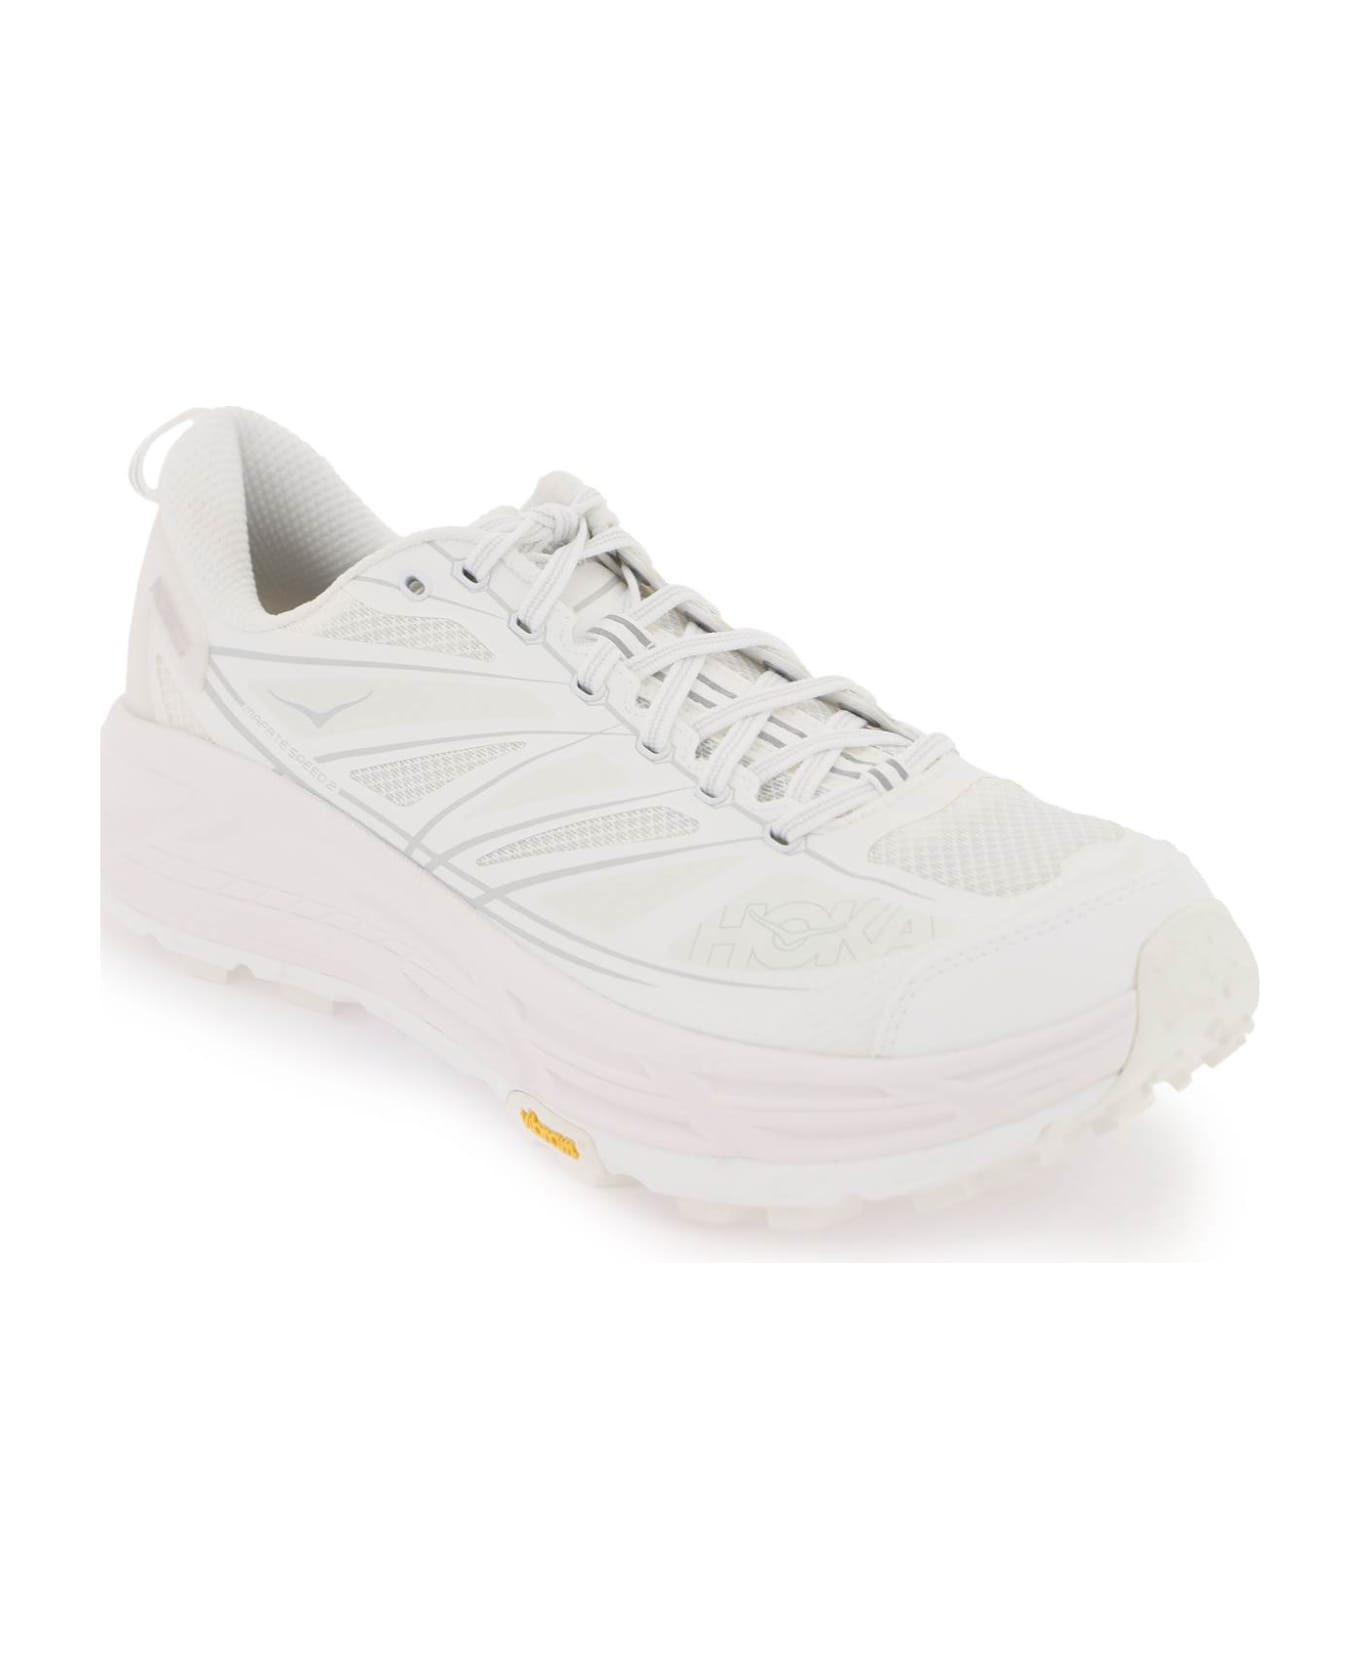 Hoka 'mafate Speed 2' Sneakers - WHITE LUNAR ROCK (White)